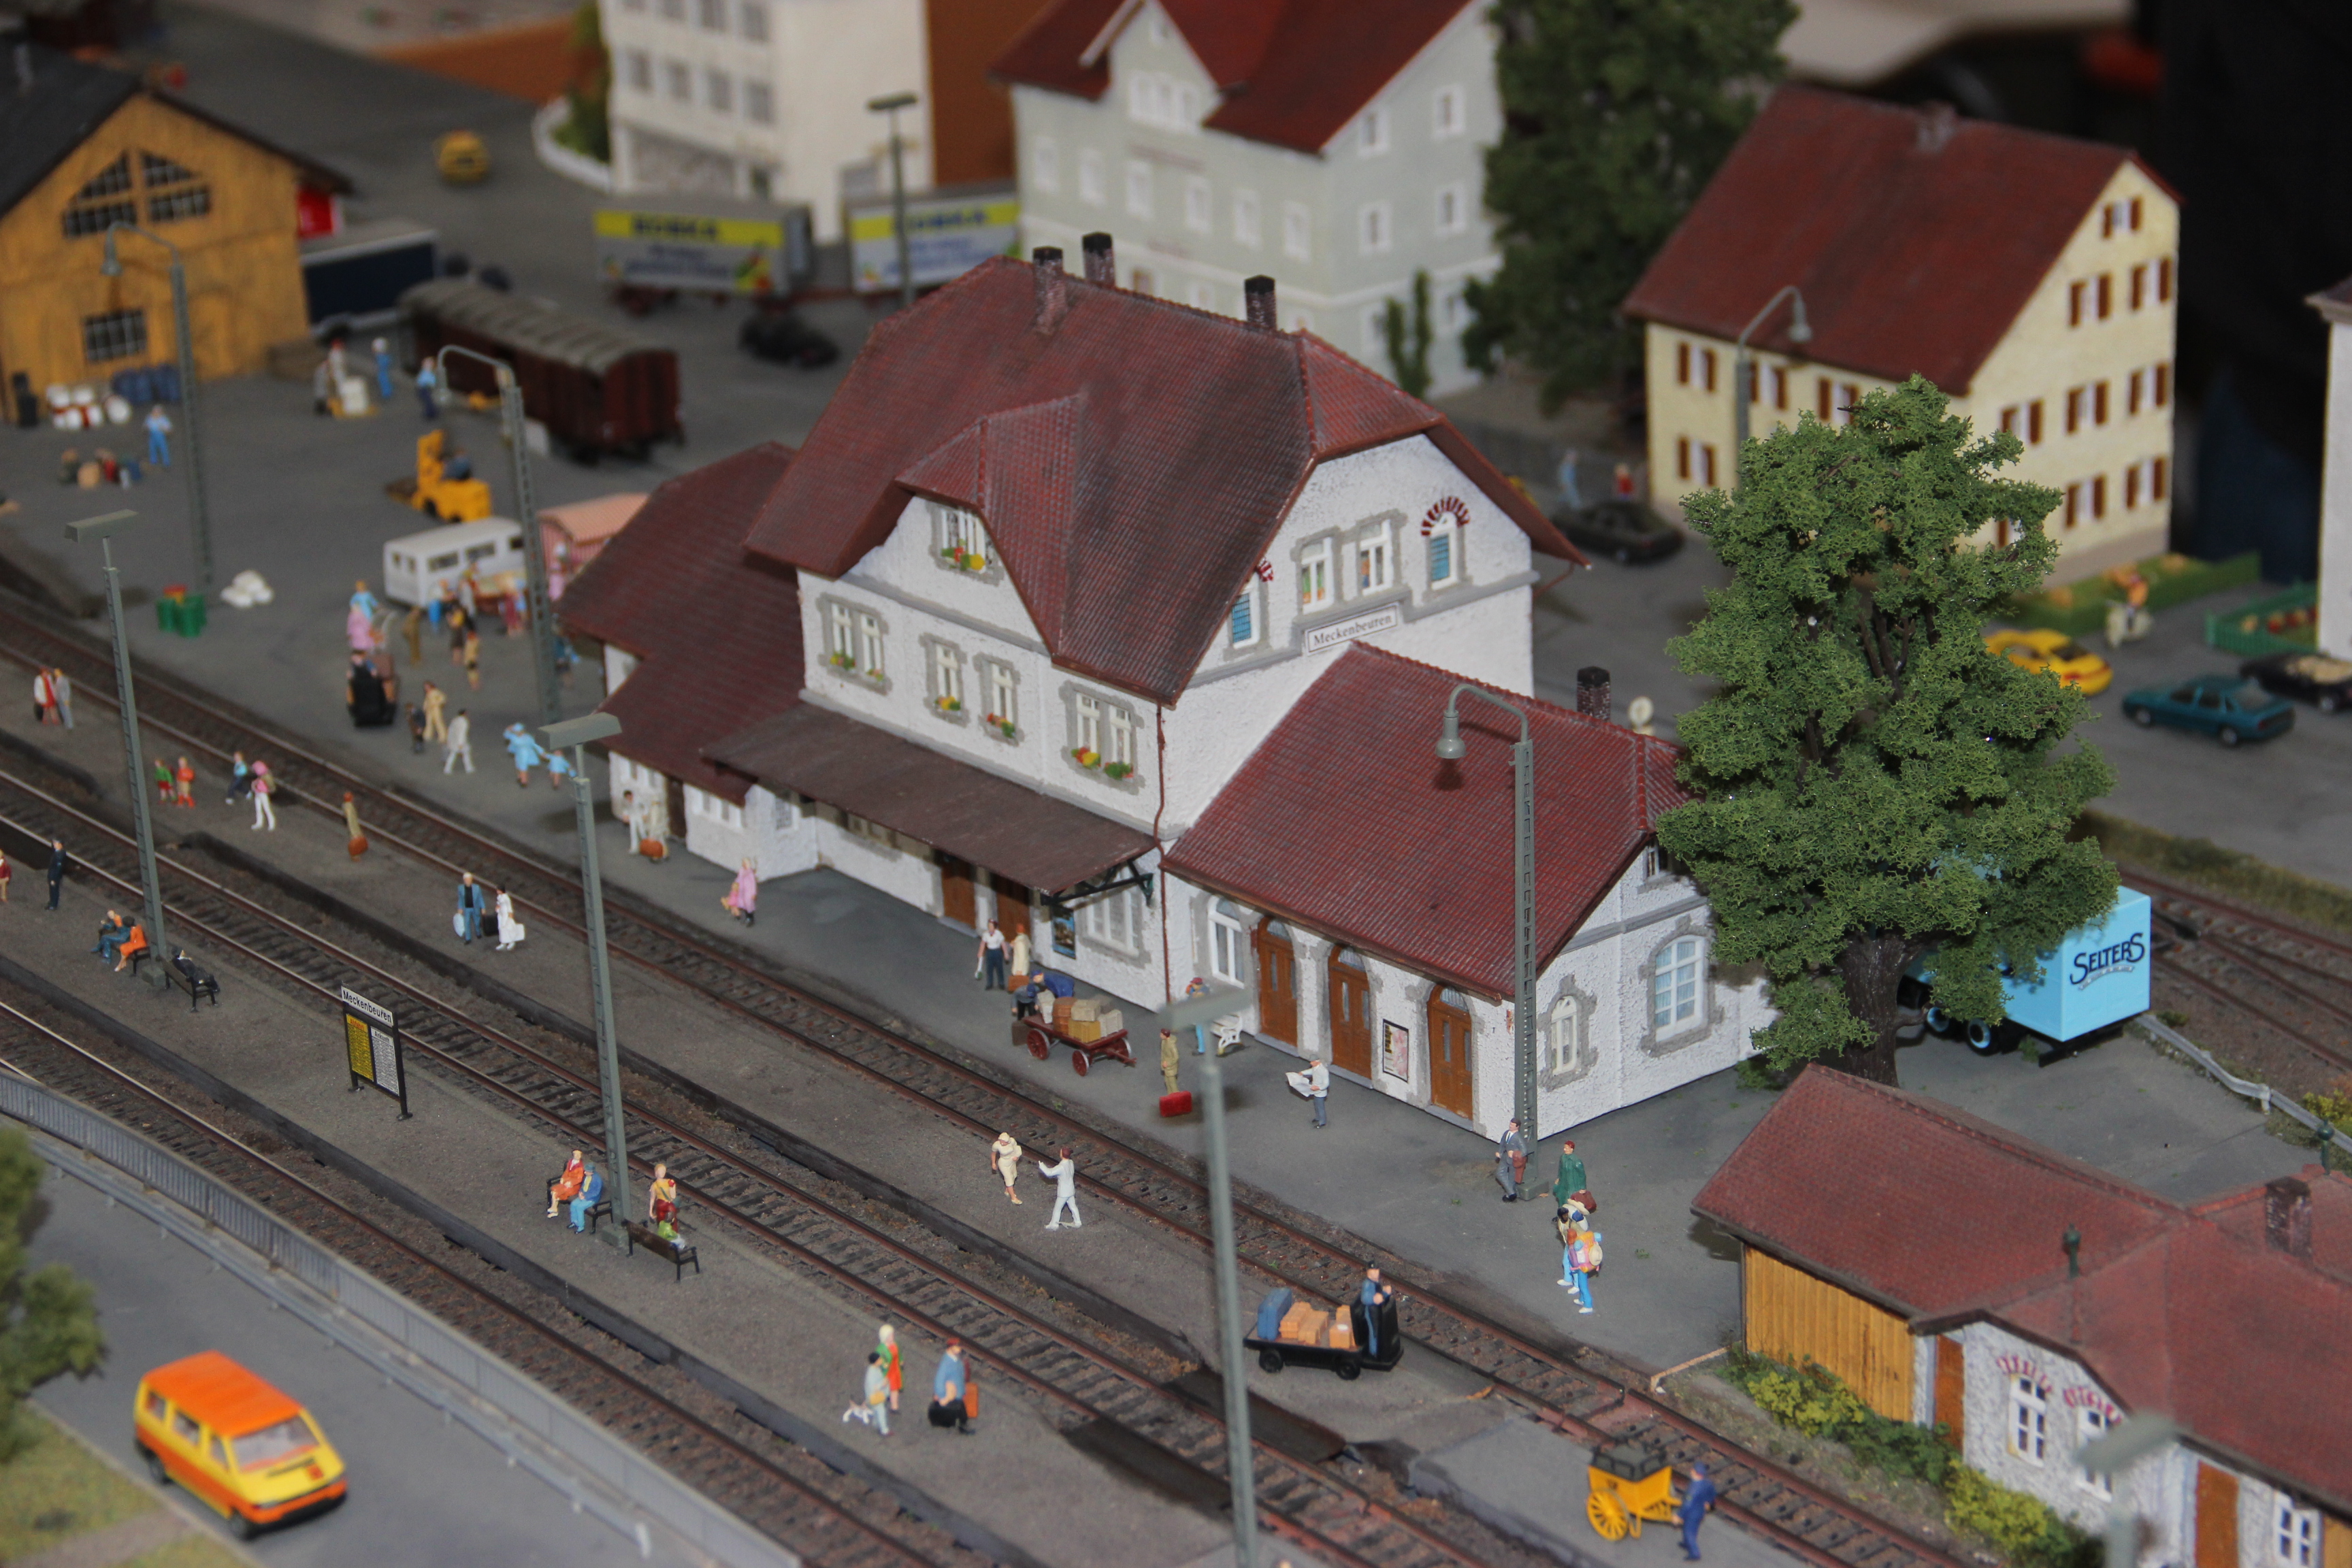  Modellbahnausstellung Schloss Aulendorf 